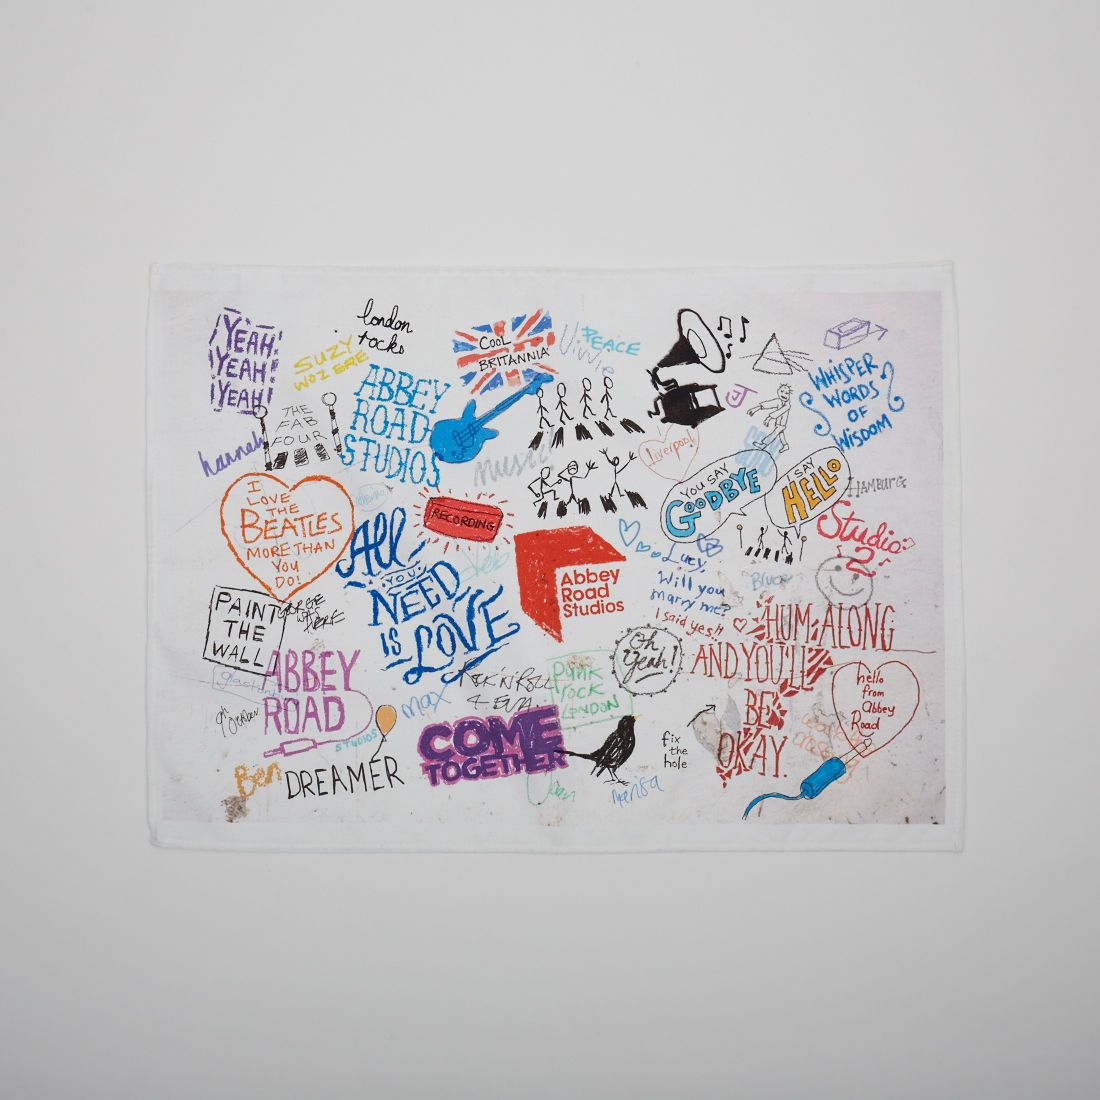 Abbey Road Studios - The Beatles Graffiti Tea Towel